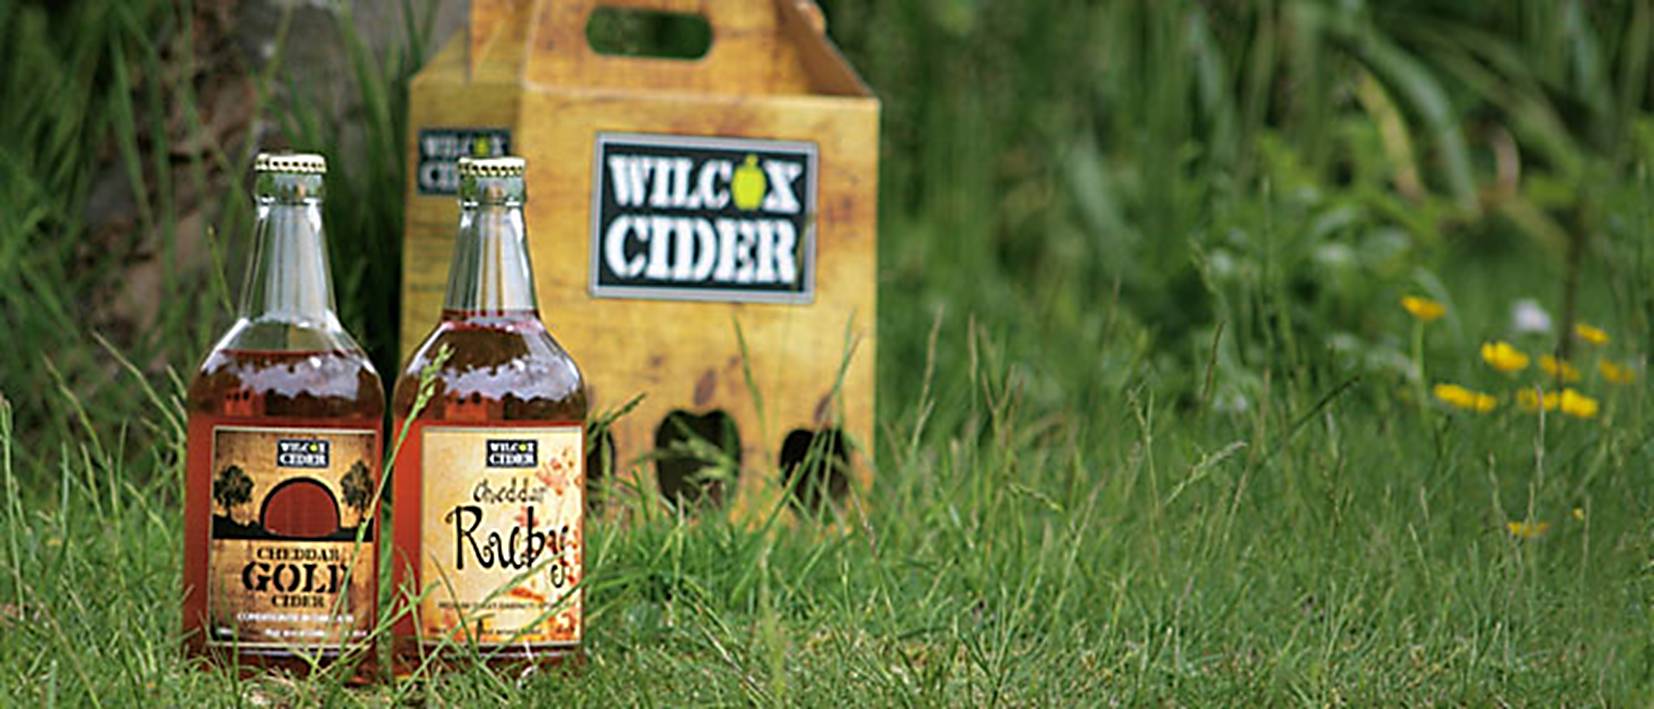 wilcox cider bottle on grass